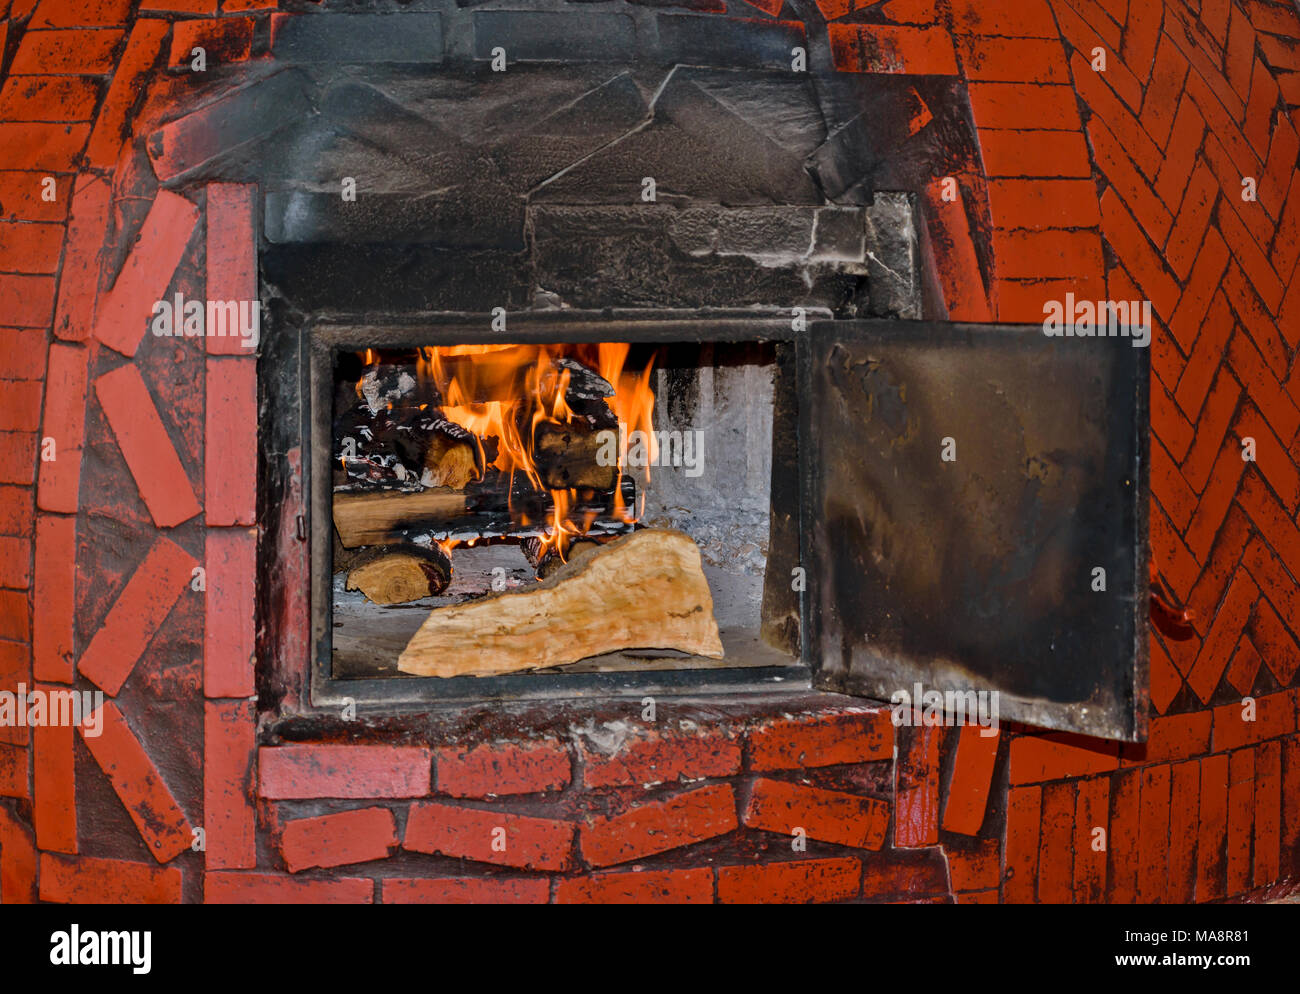 Il Marocco Marrakech Piazza Jemaa El Fna il fuoco di legna all'interno di un forno a legna Foto Stock